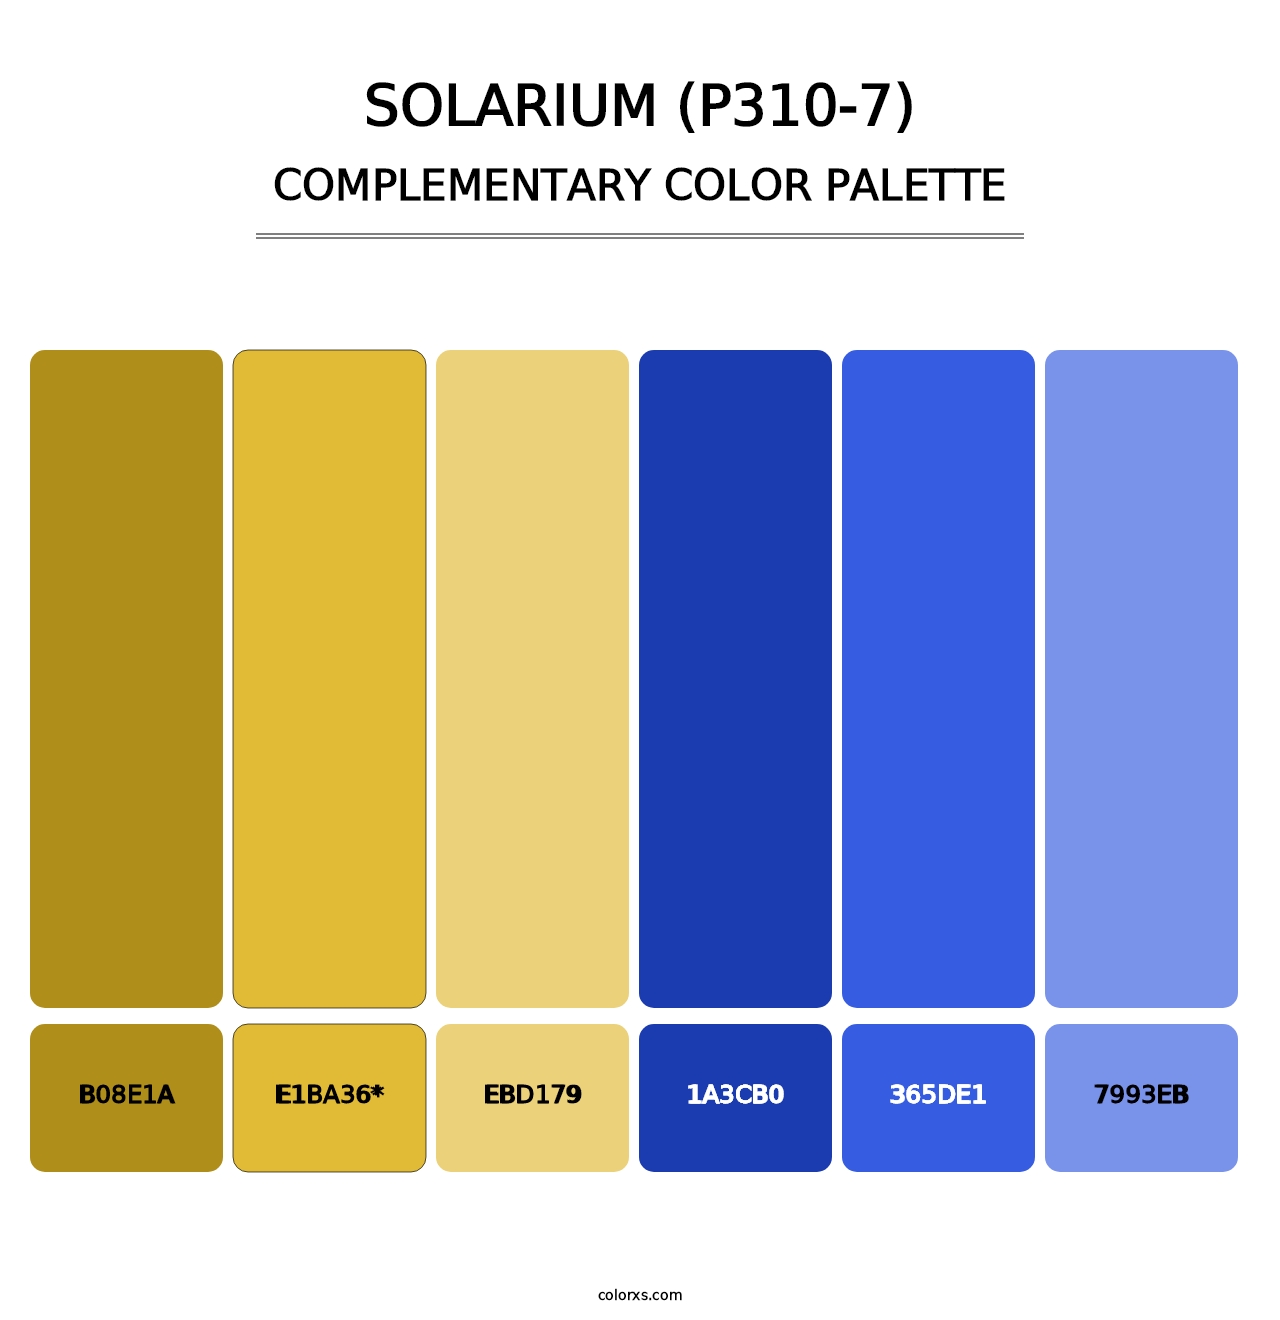 Solarium (P310-7) - Complementary Color Palette